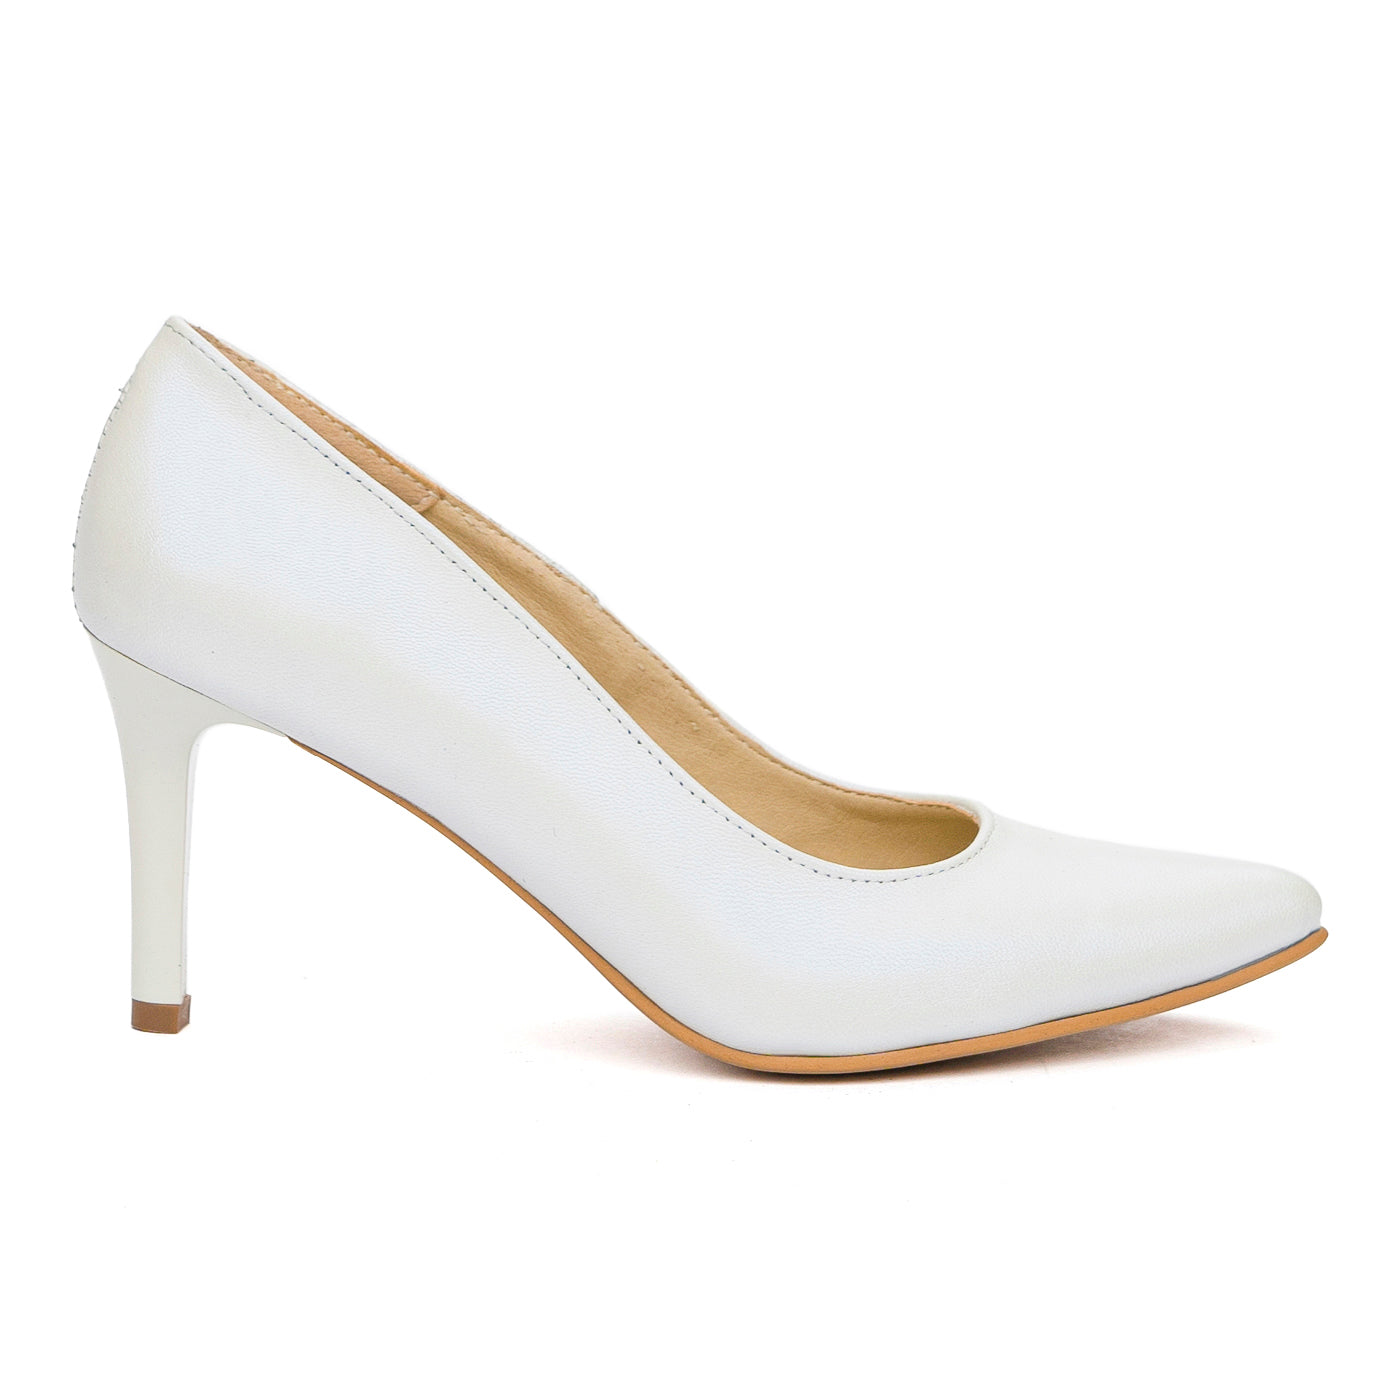 Pantofi Dama Eleganti cu Toc 8 Cm din Piele Naturala Albi 4067